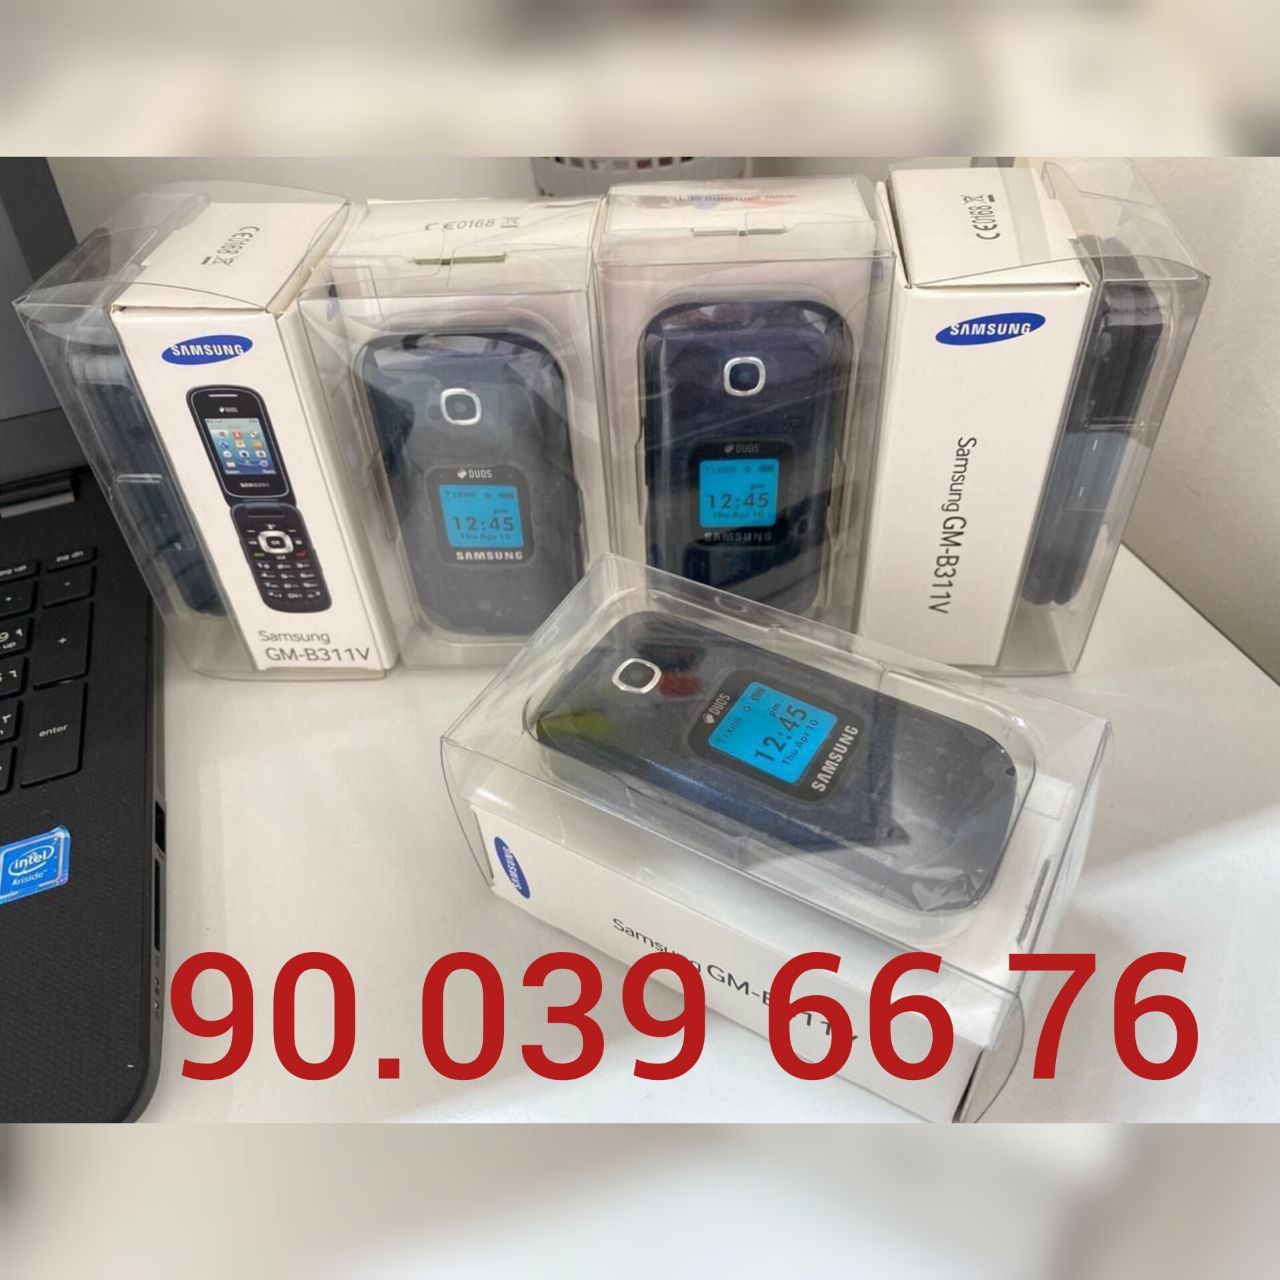 Gusto 3 (B311V) Samsung, Nokia 2720 flip, Nokia 2660 flip, Yengi tella